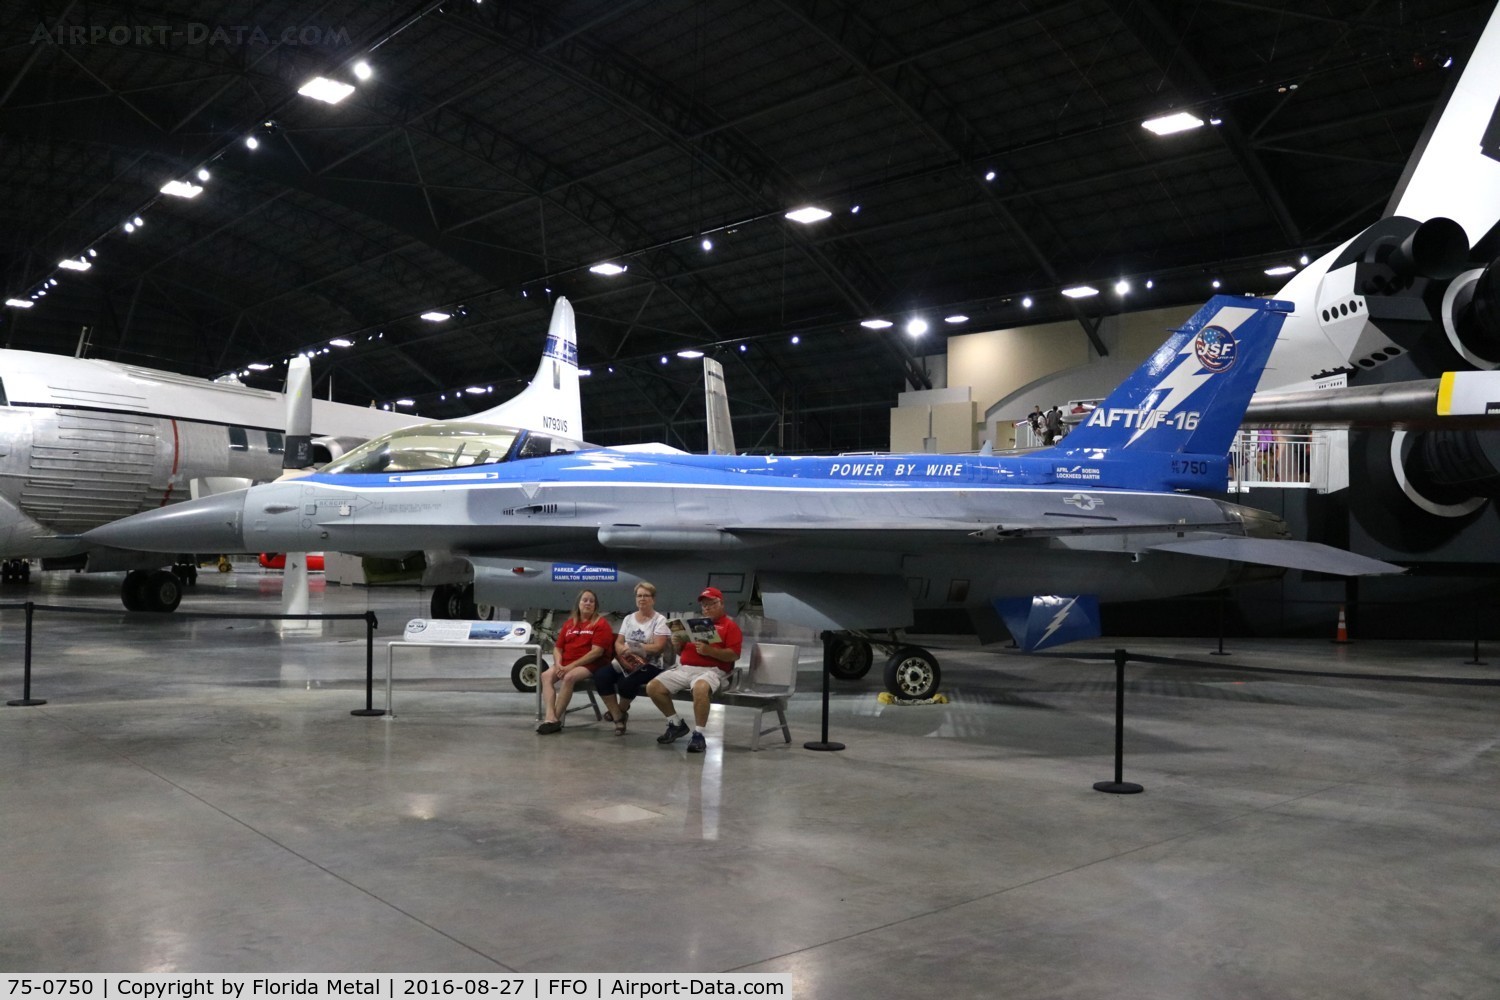 75-0750, 1975 General Dynamics YF-16A Fighting Falcon C/N 61-6, YF-16A